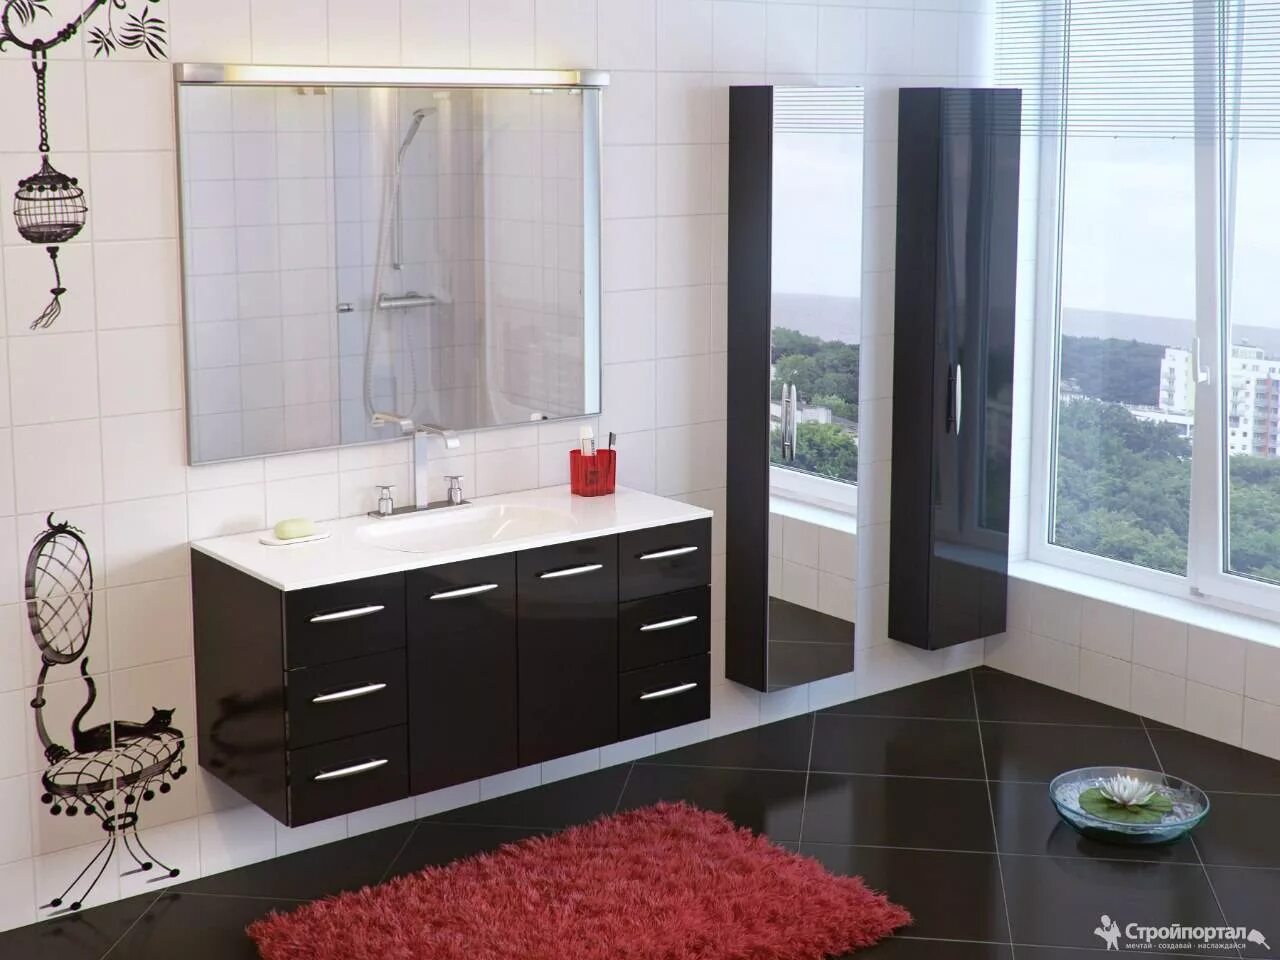 Изготовление ванных комнат на заказ. Мебель для ванной комнаты. Красивая мебель для ванной комнаты. Комплект мебели в ванную комнату. Стильная ванная мебель.